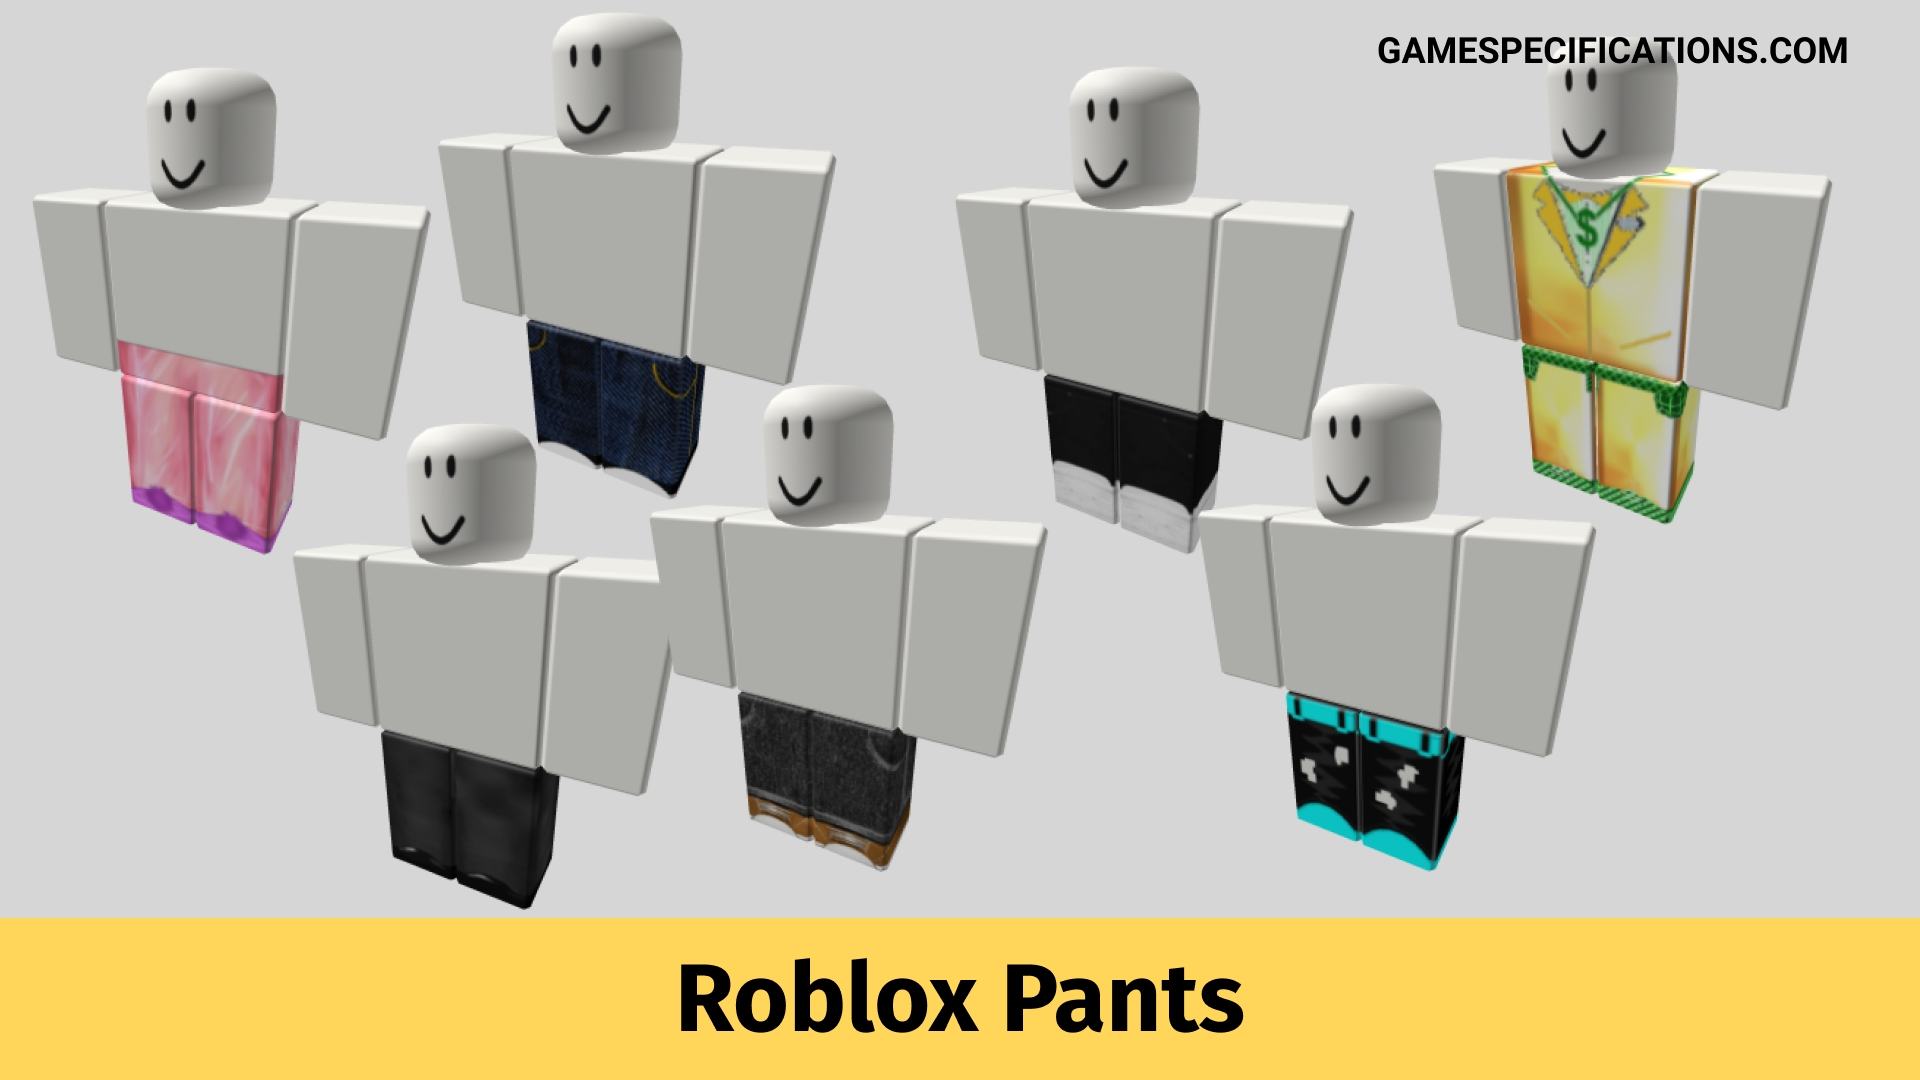 roblox girl pants - Google Search